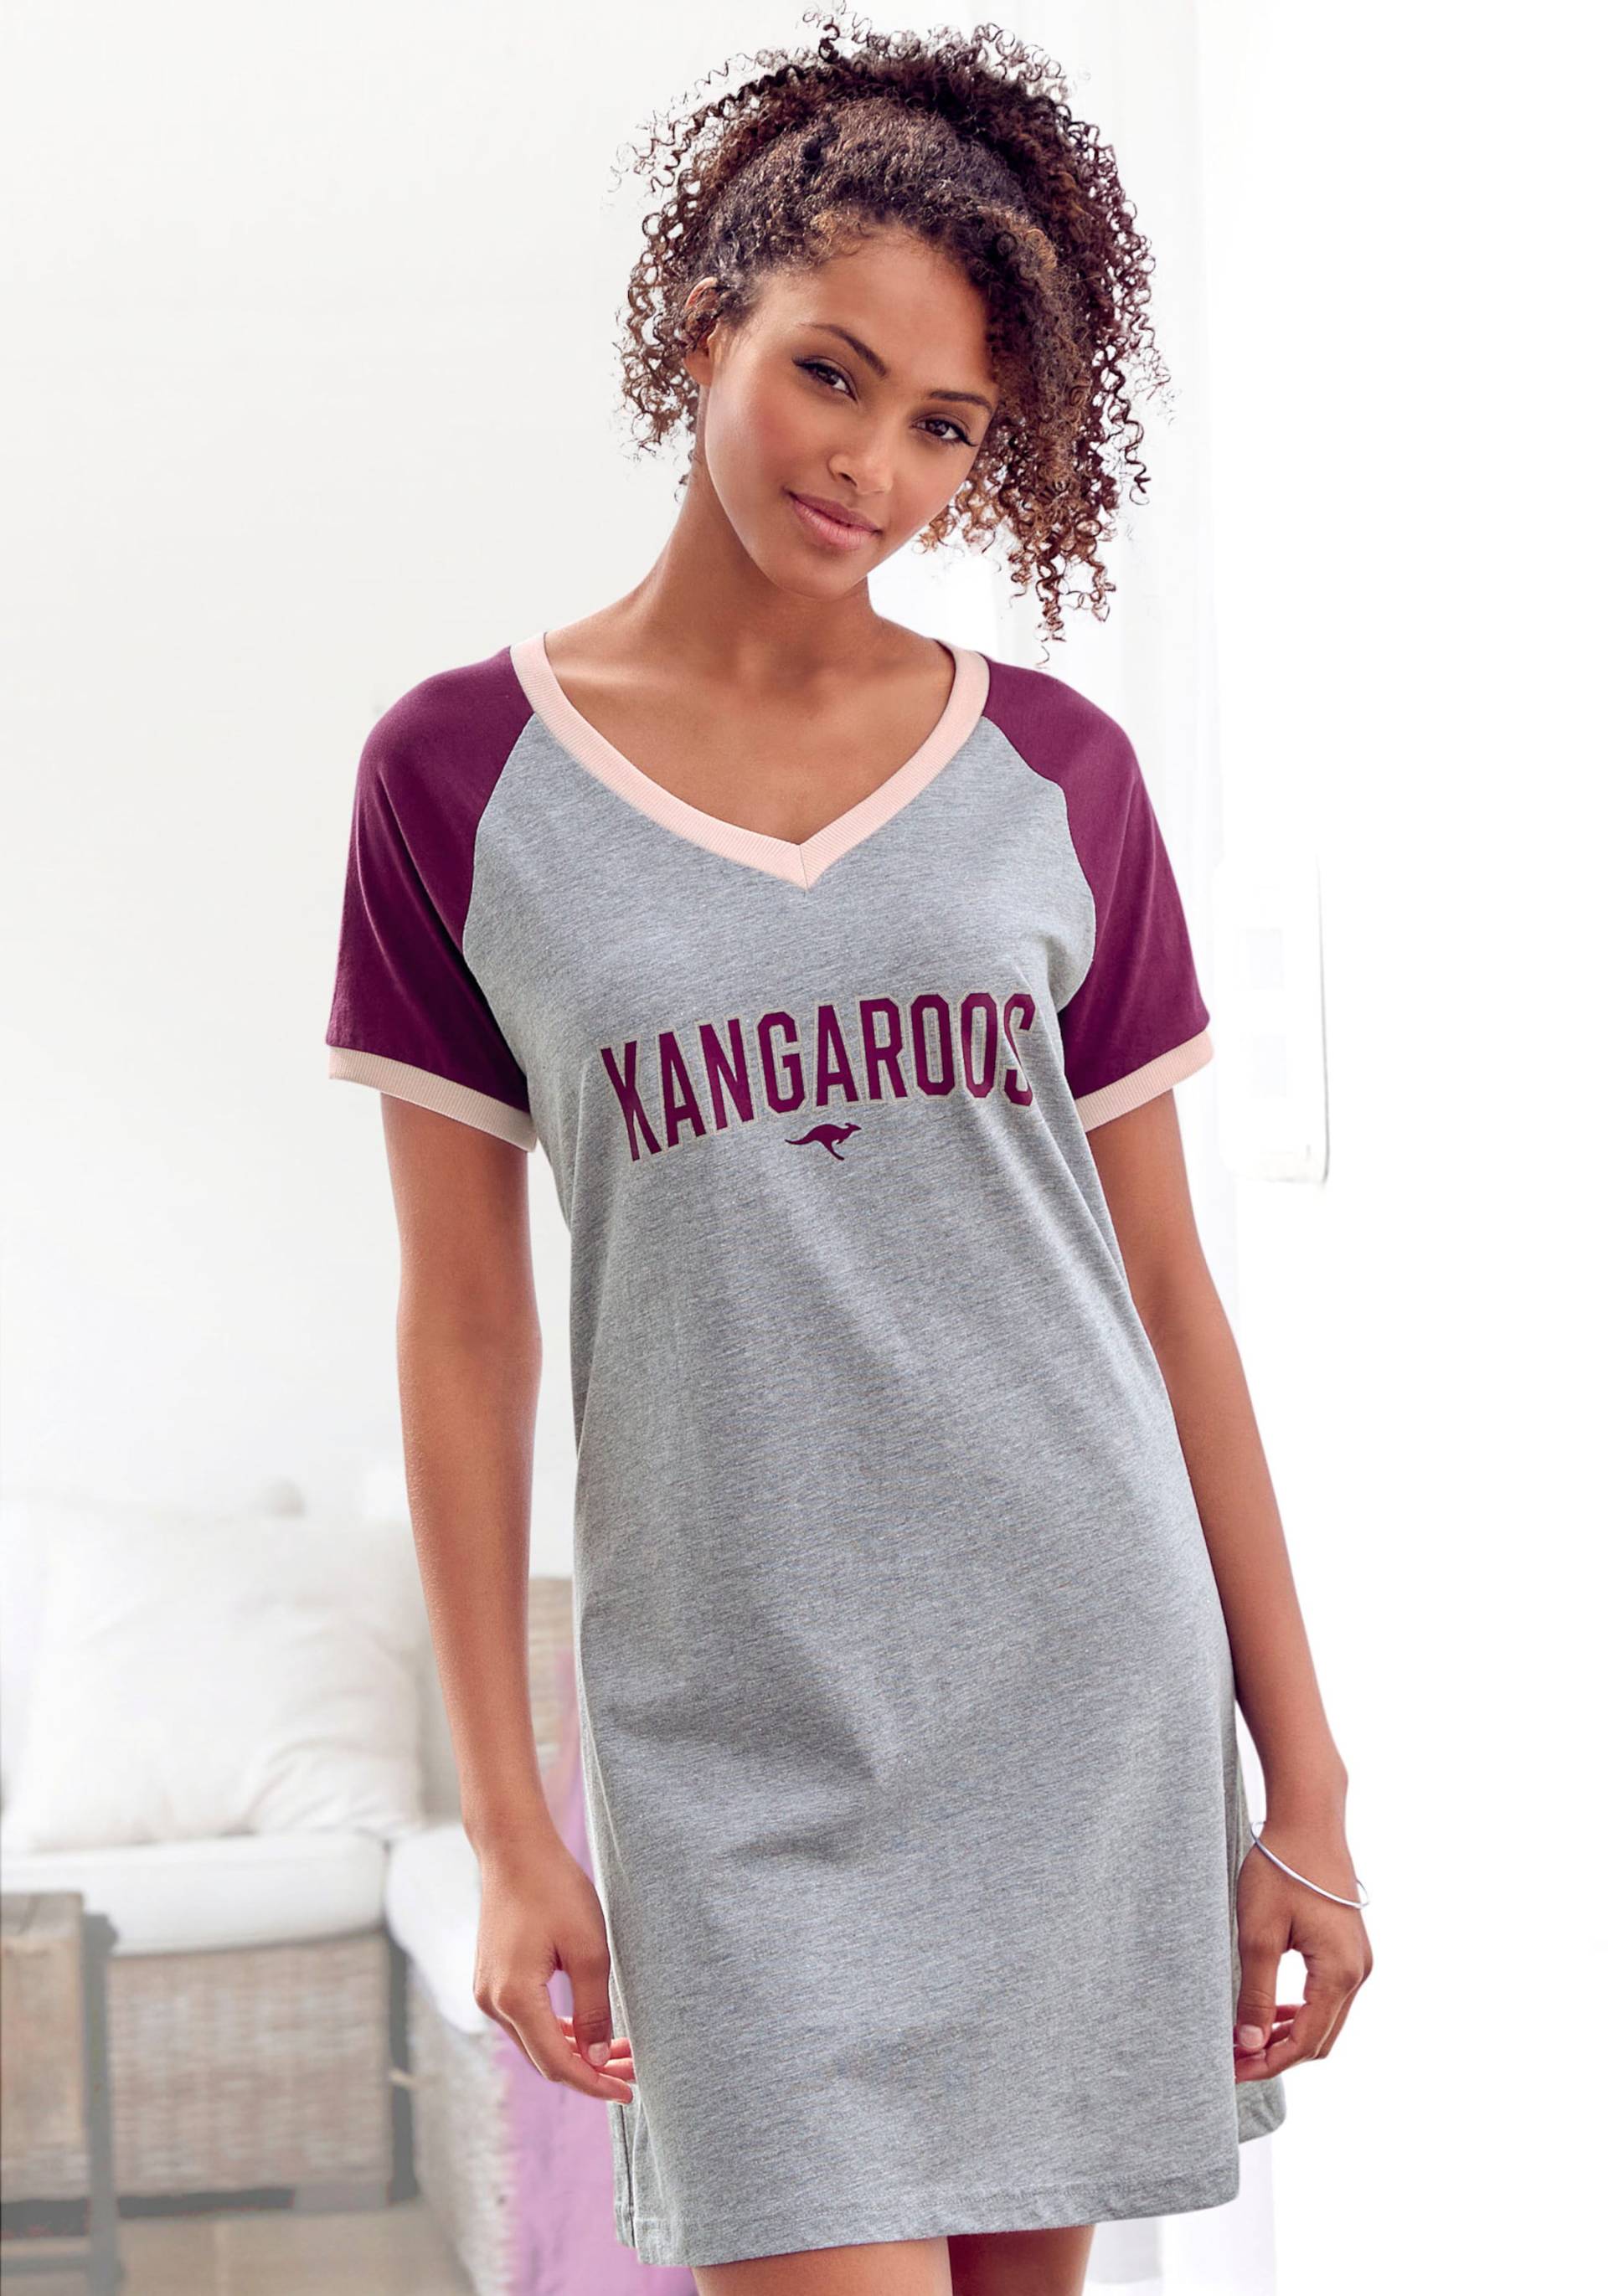 Bigshirt in bordeaux-grau-meliert von KangaROOS